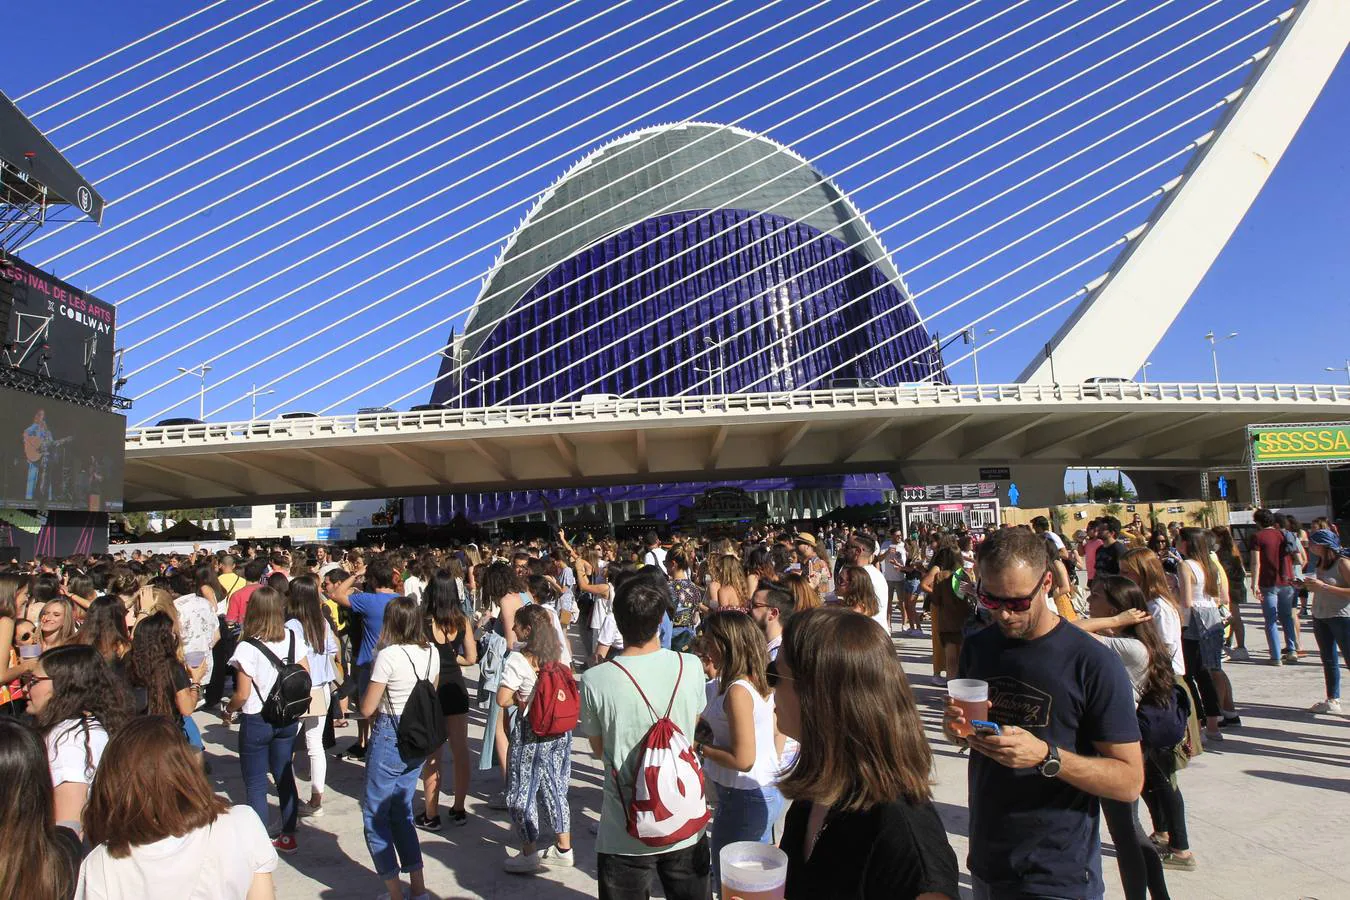 La Ciudad de las Artes y las Ciencias de Valencia acoge este 7 y 8 de junio a miles de fans de la música y a cientos de artistas para dar la bienvenida al verano